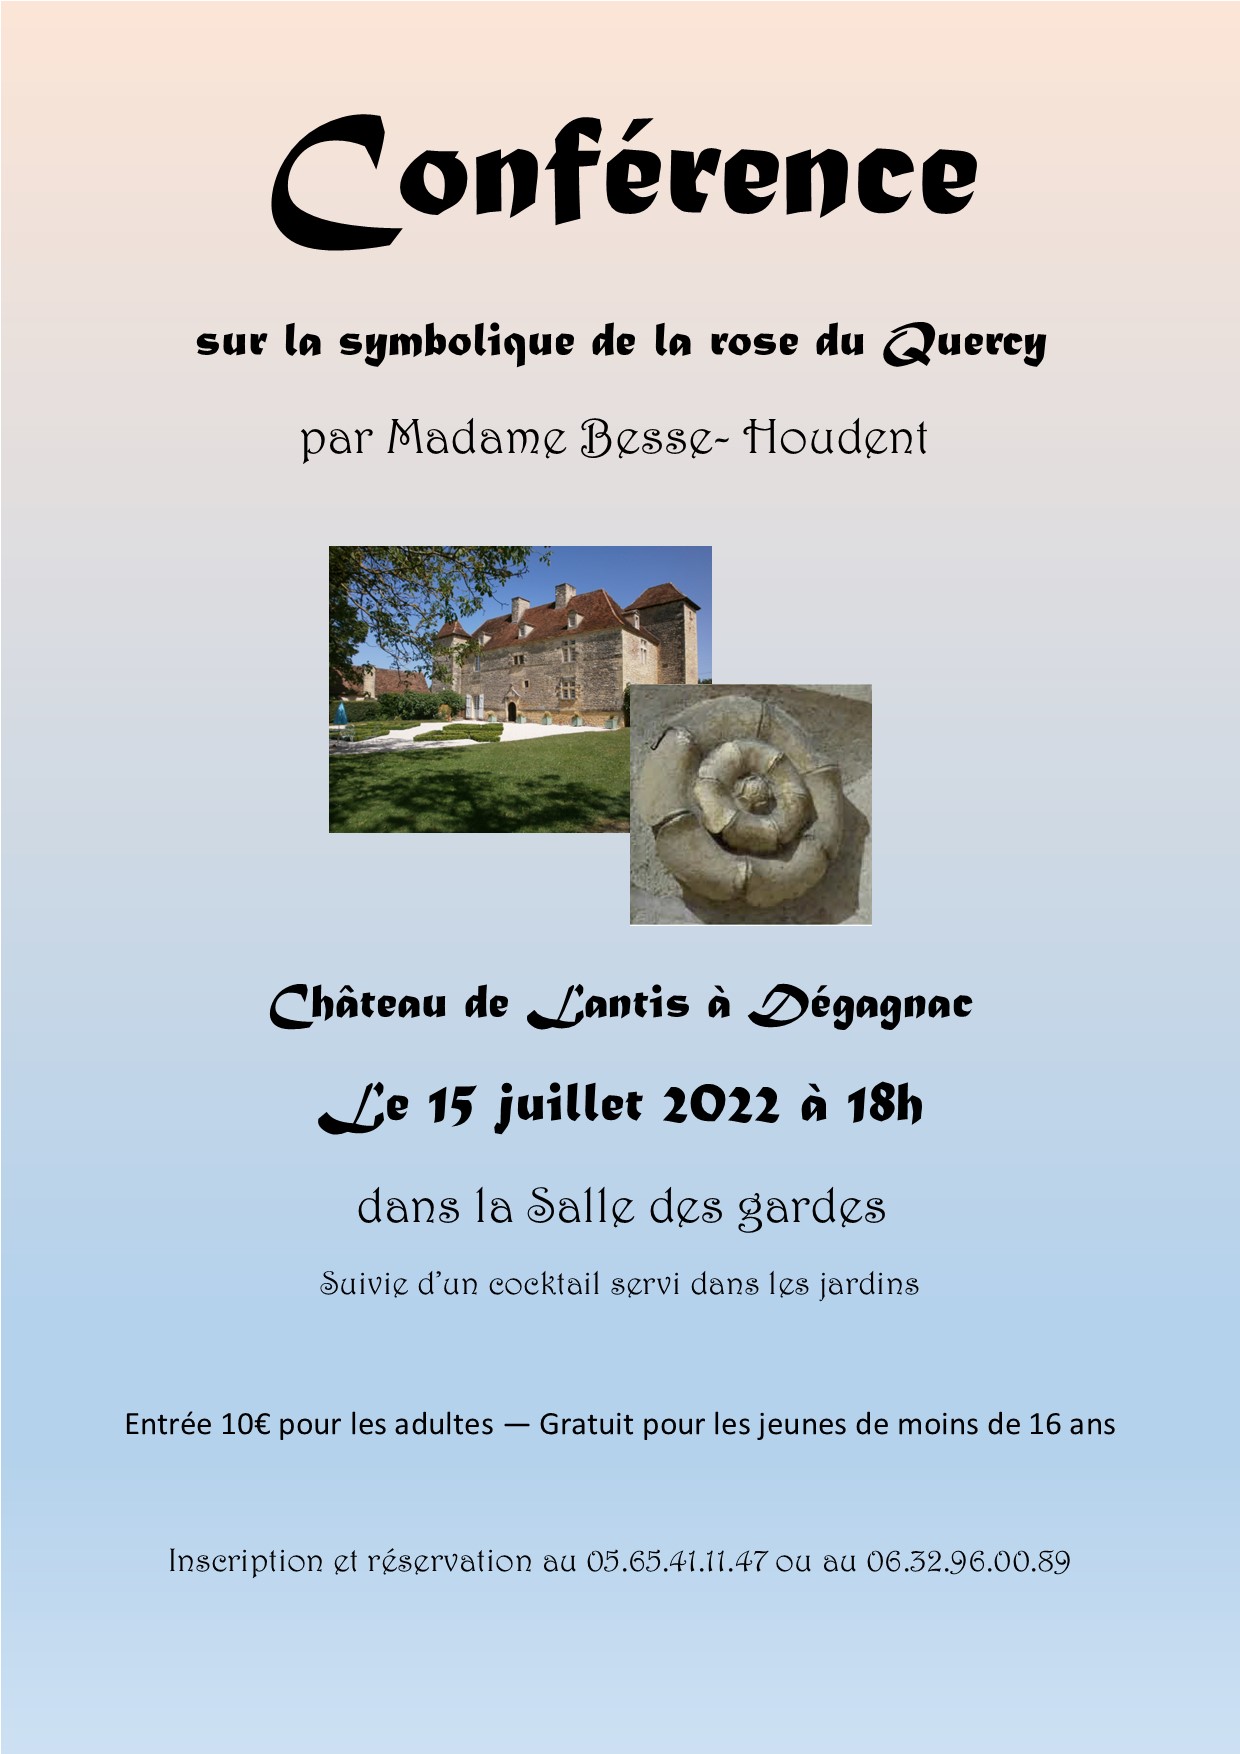 Conférence sur la symbolique de la rose du Quercy au château de Lantis